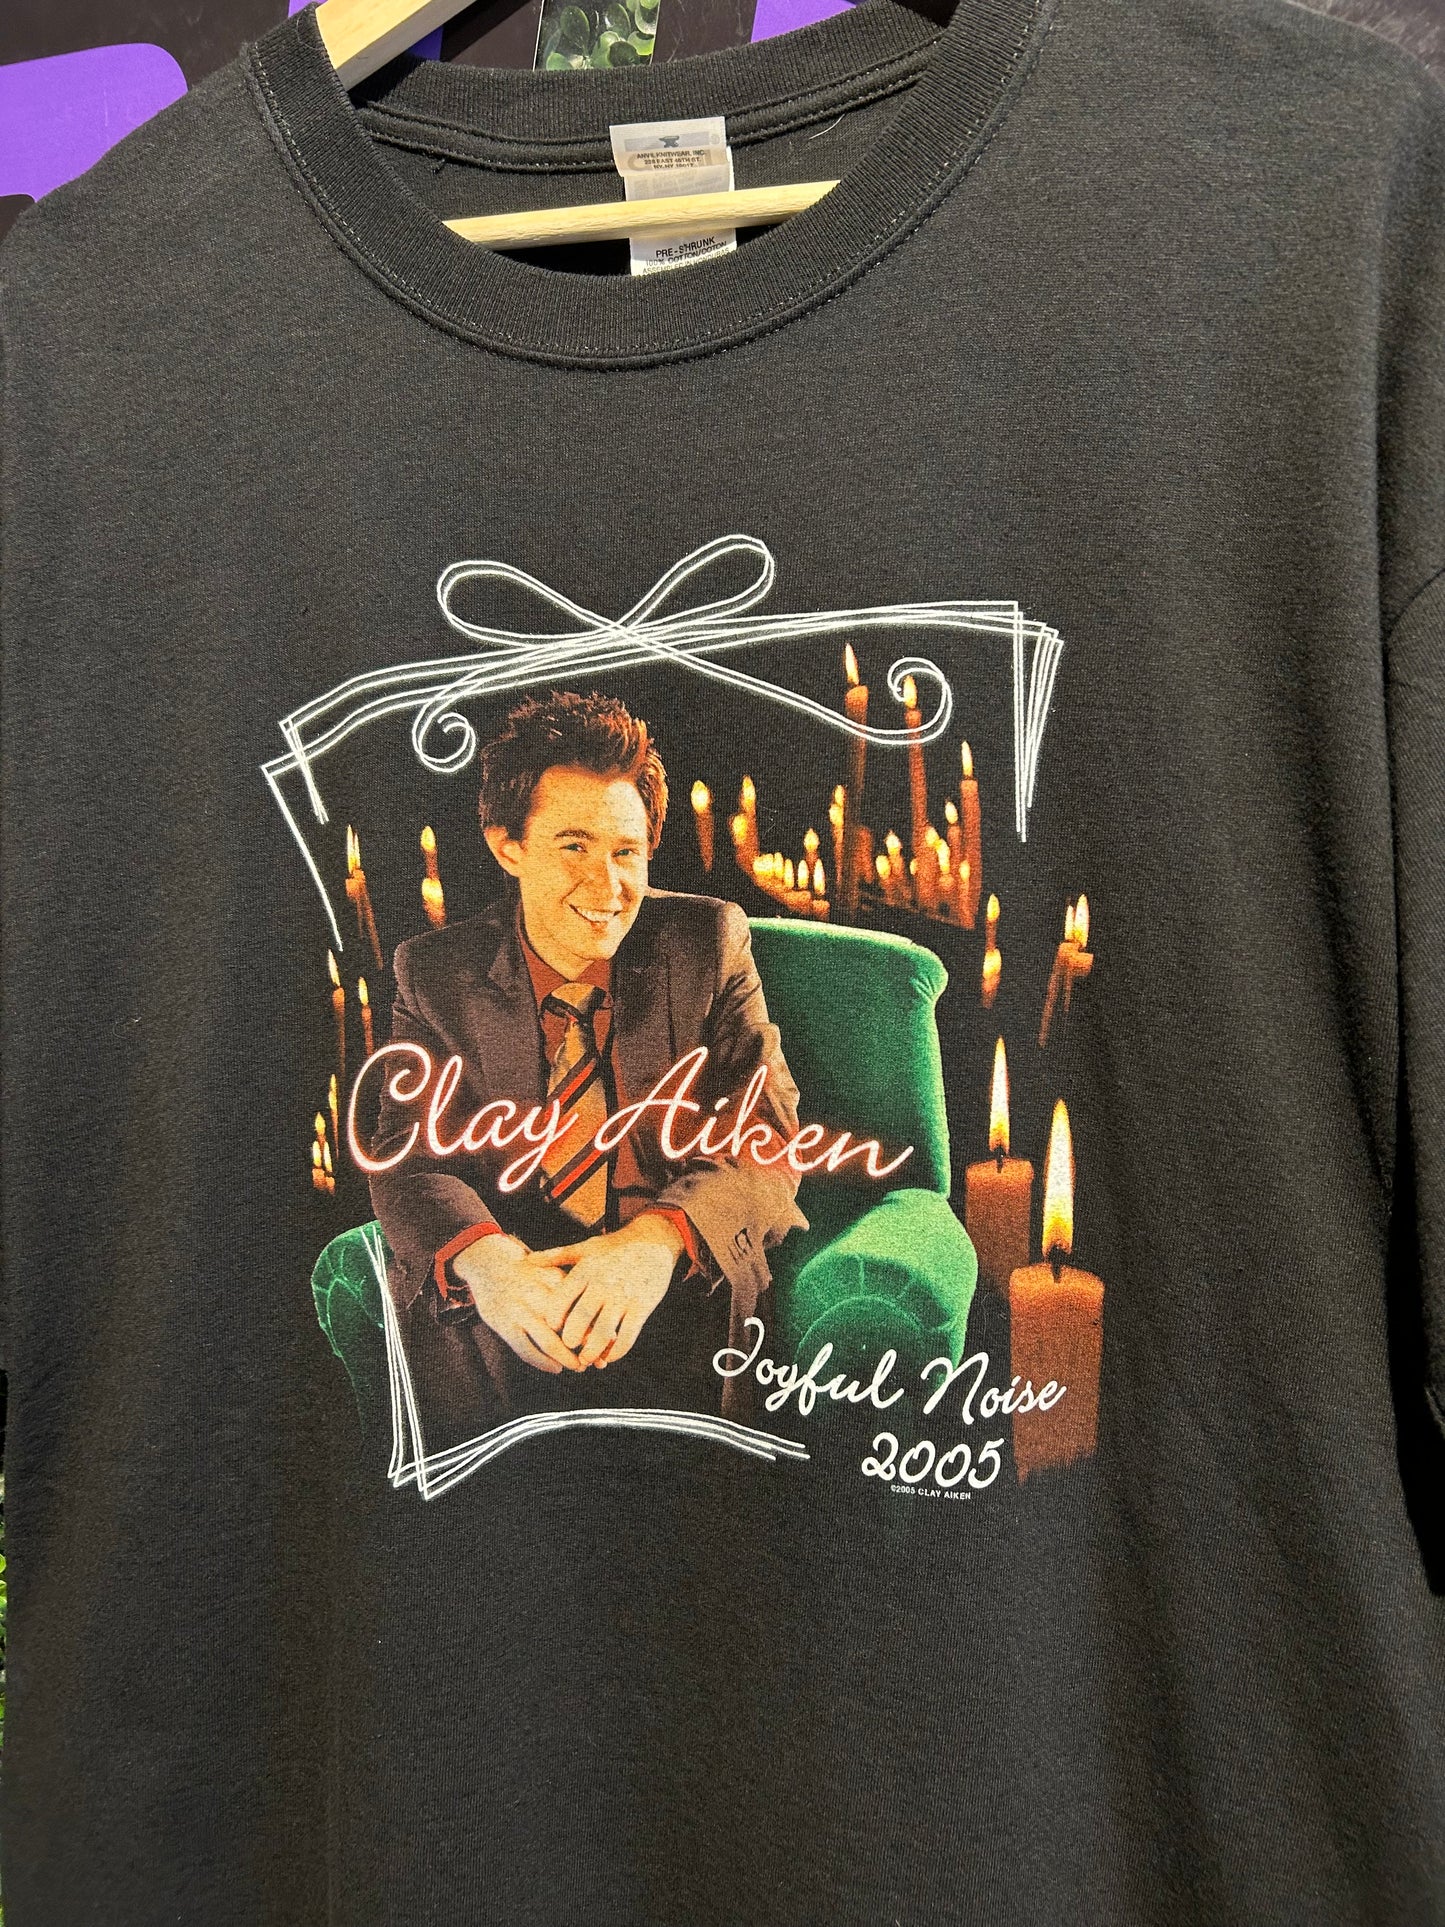 2005 Clay Aiken Joyful Noise Tour T-Shirt. Size XL